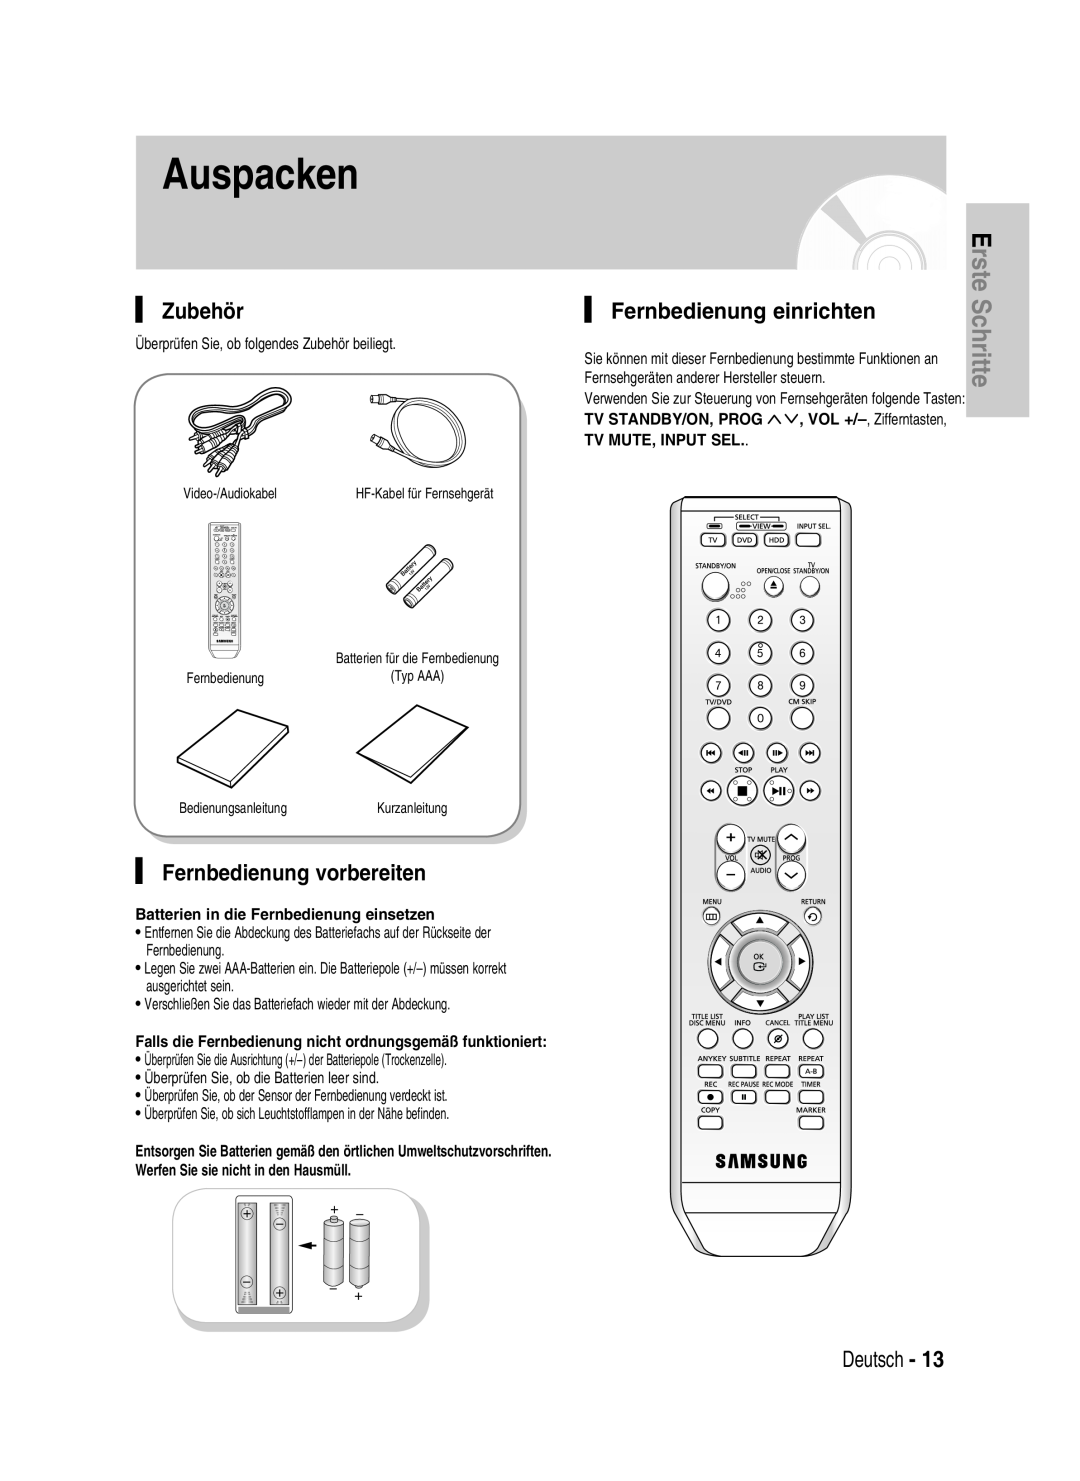 Samsung DVD-HR730/XEB Auspacken, Zubehör, Fernbedienung vorbereiten, Fernbedienung einrichten, Erste Schritte, Deutsch 